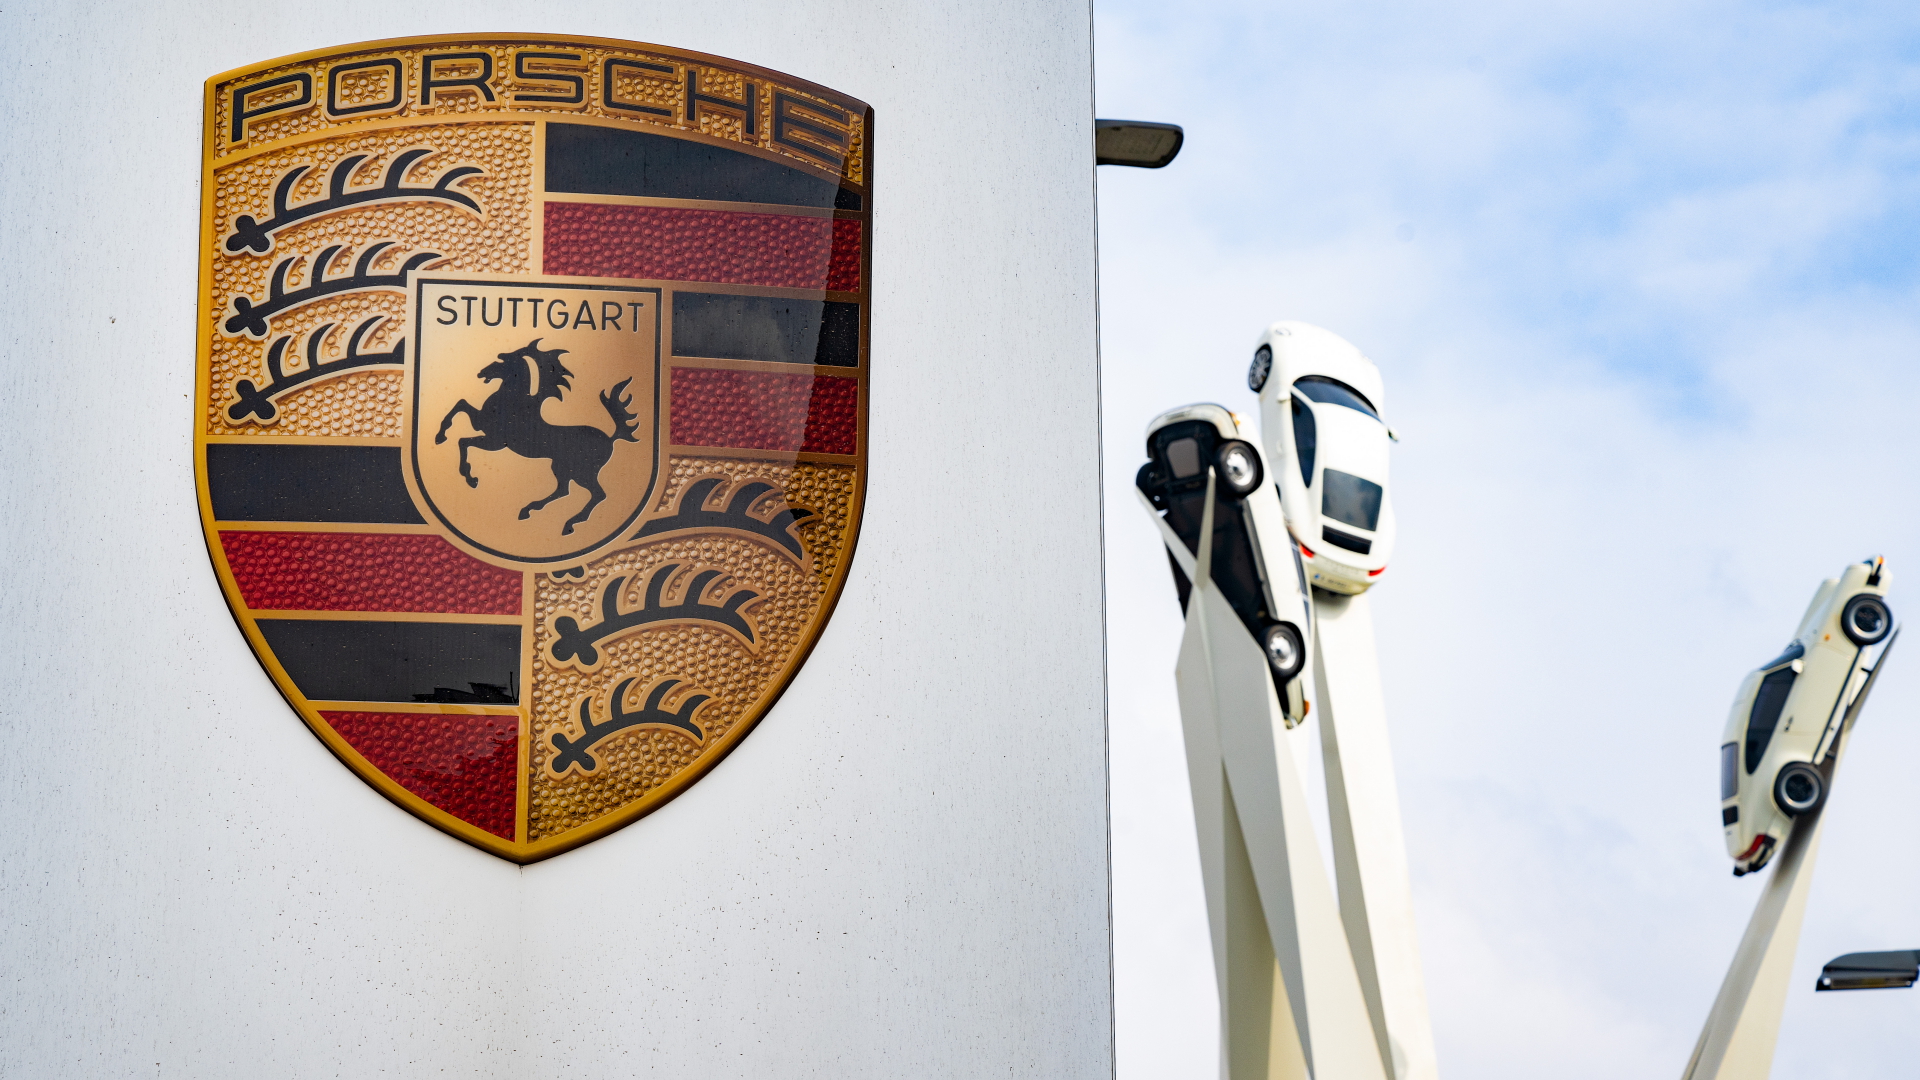 Elektroautos sollen die Porsche-Rendite treiben